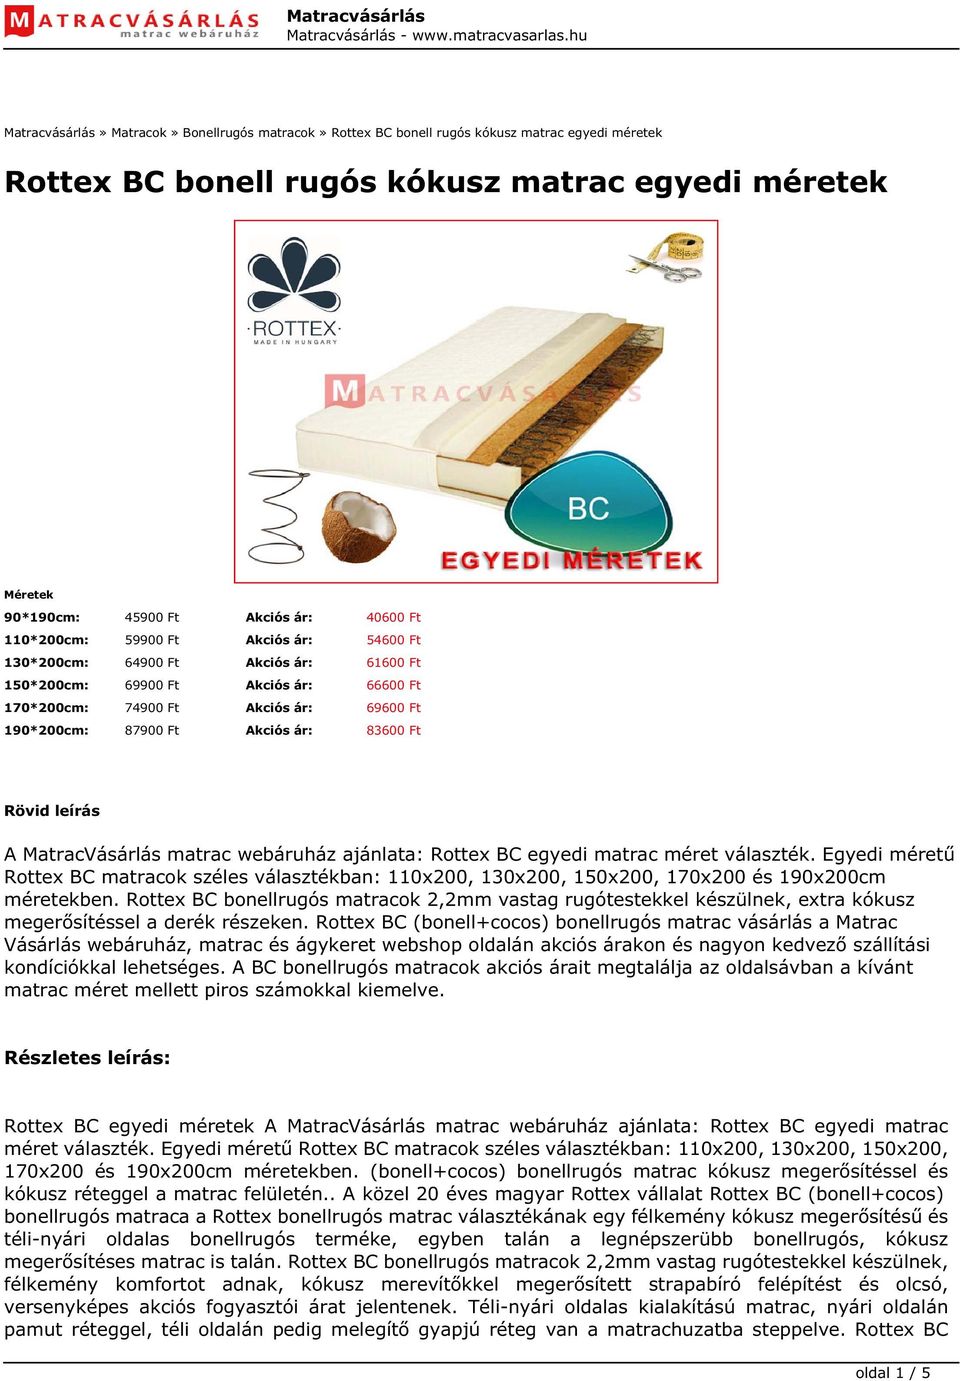 Rottex BC bonell rugós kókusz matrac egyedi méretek - PDF Free Download